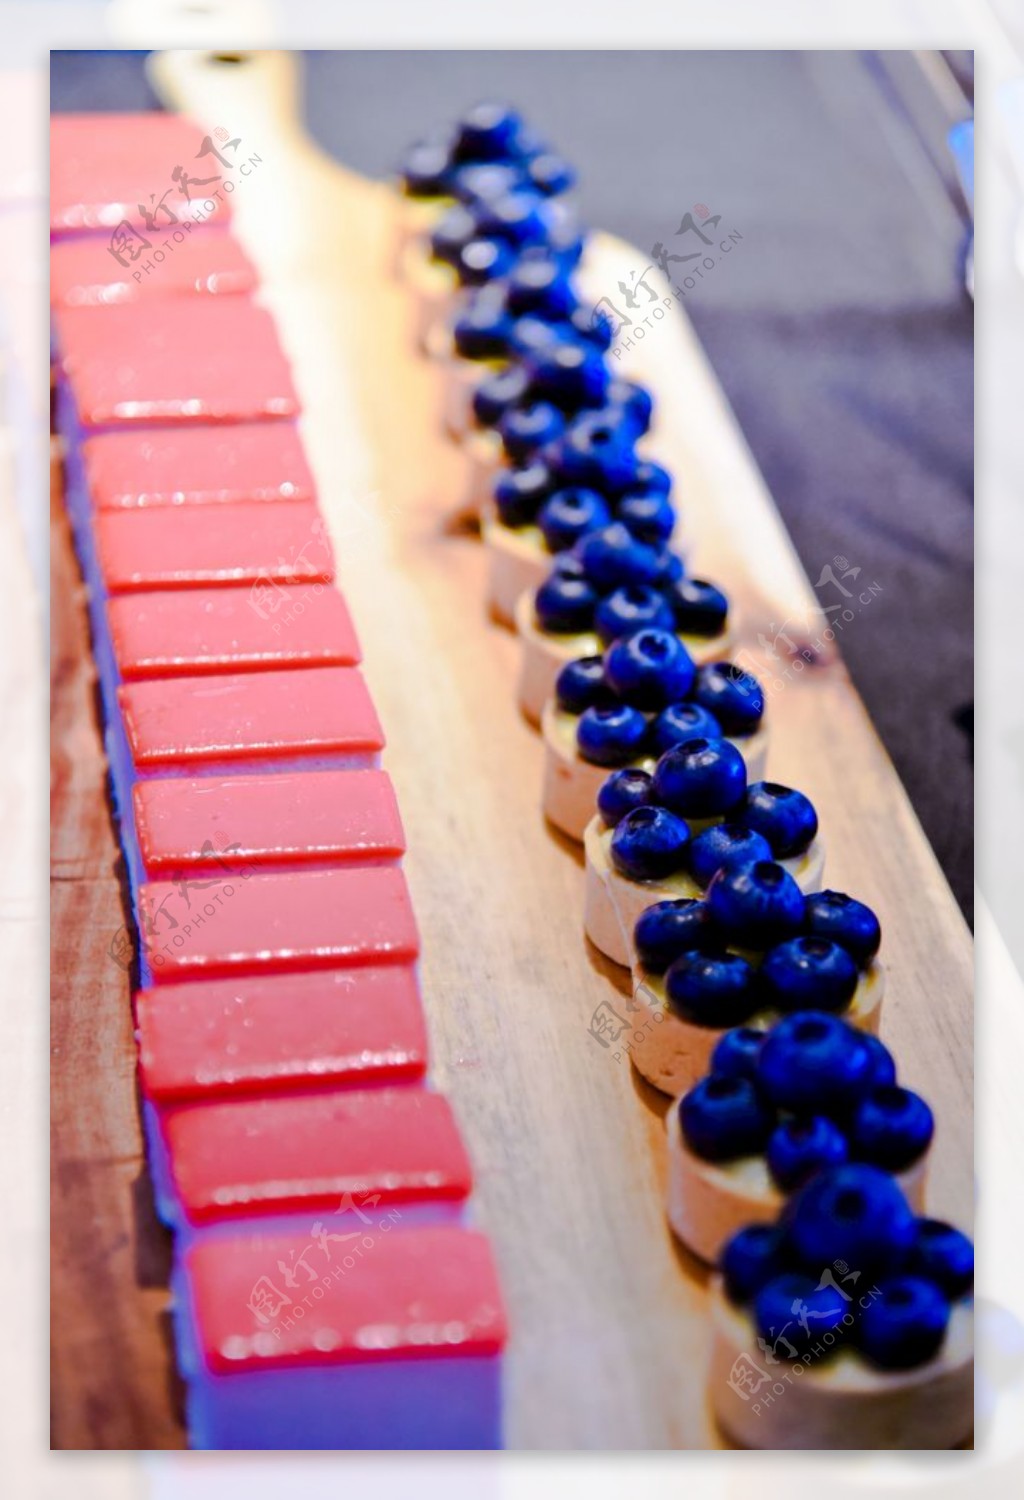 蓝莓甜点